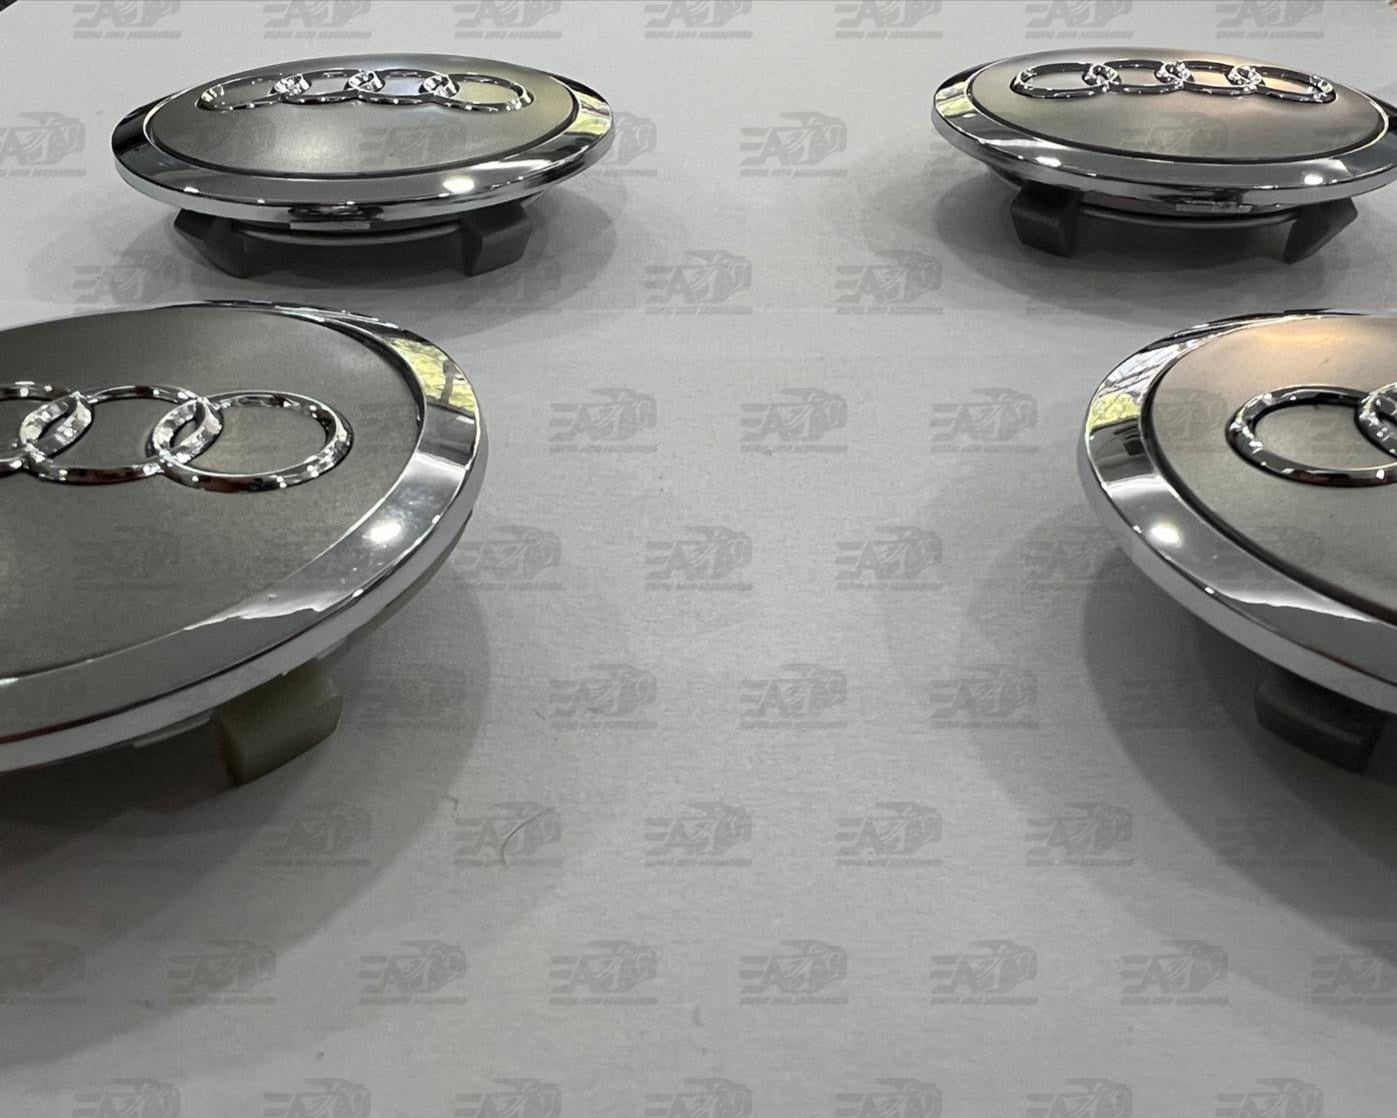 Audi silver center caps set 68mm